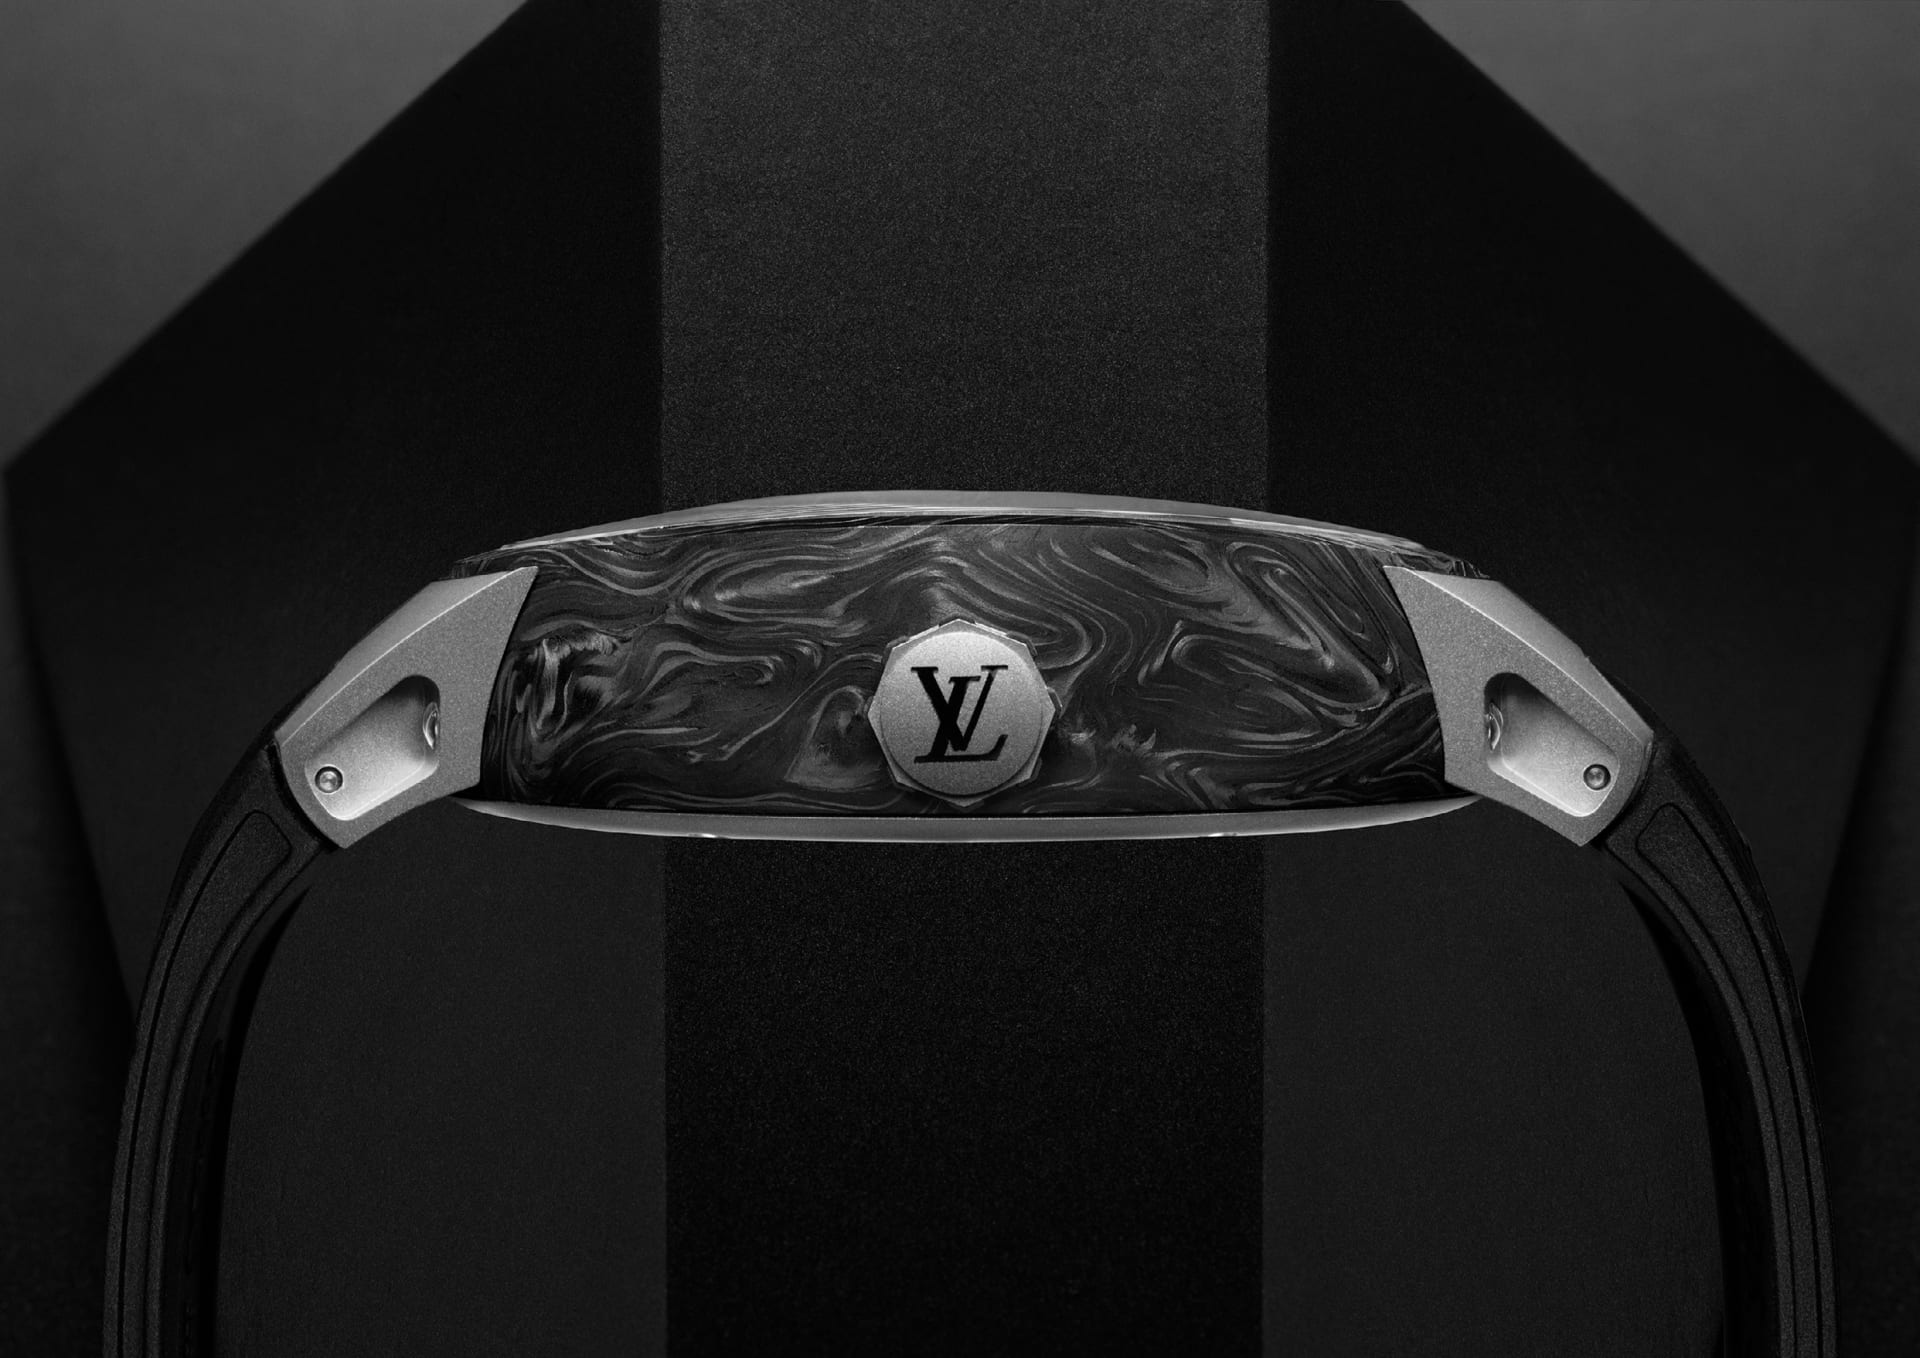 Hands-On with the Louis Vuitton Flying Tourbillon Poinçon de Genève